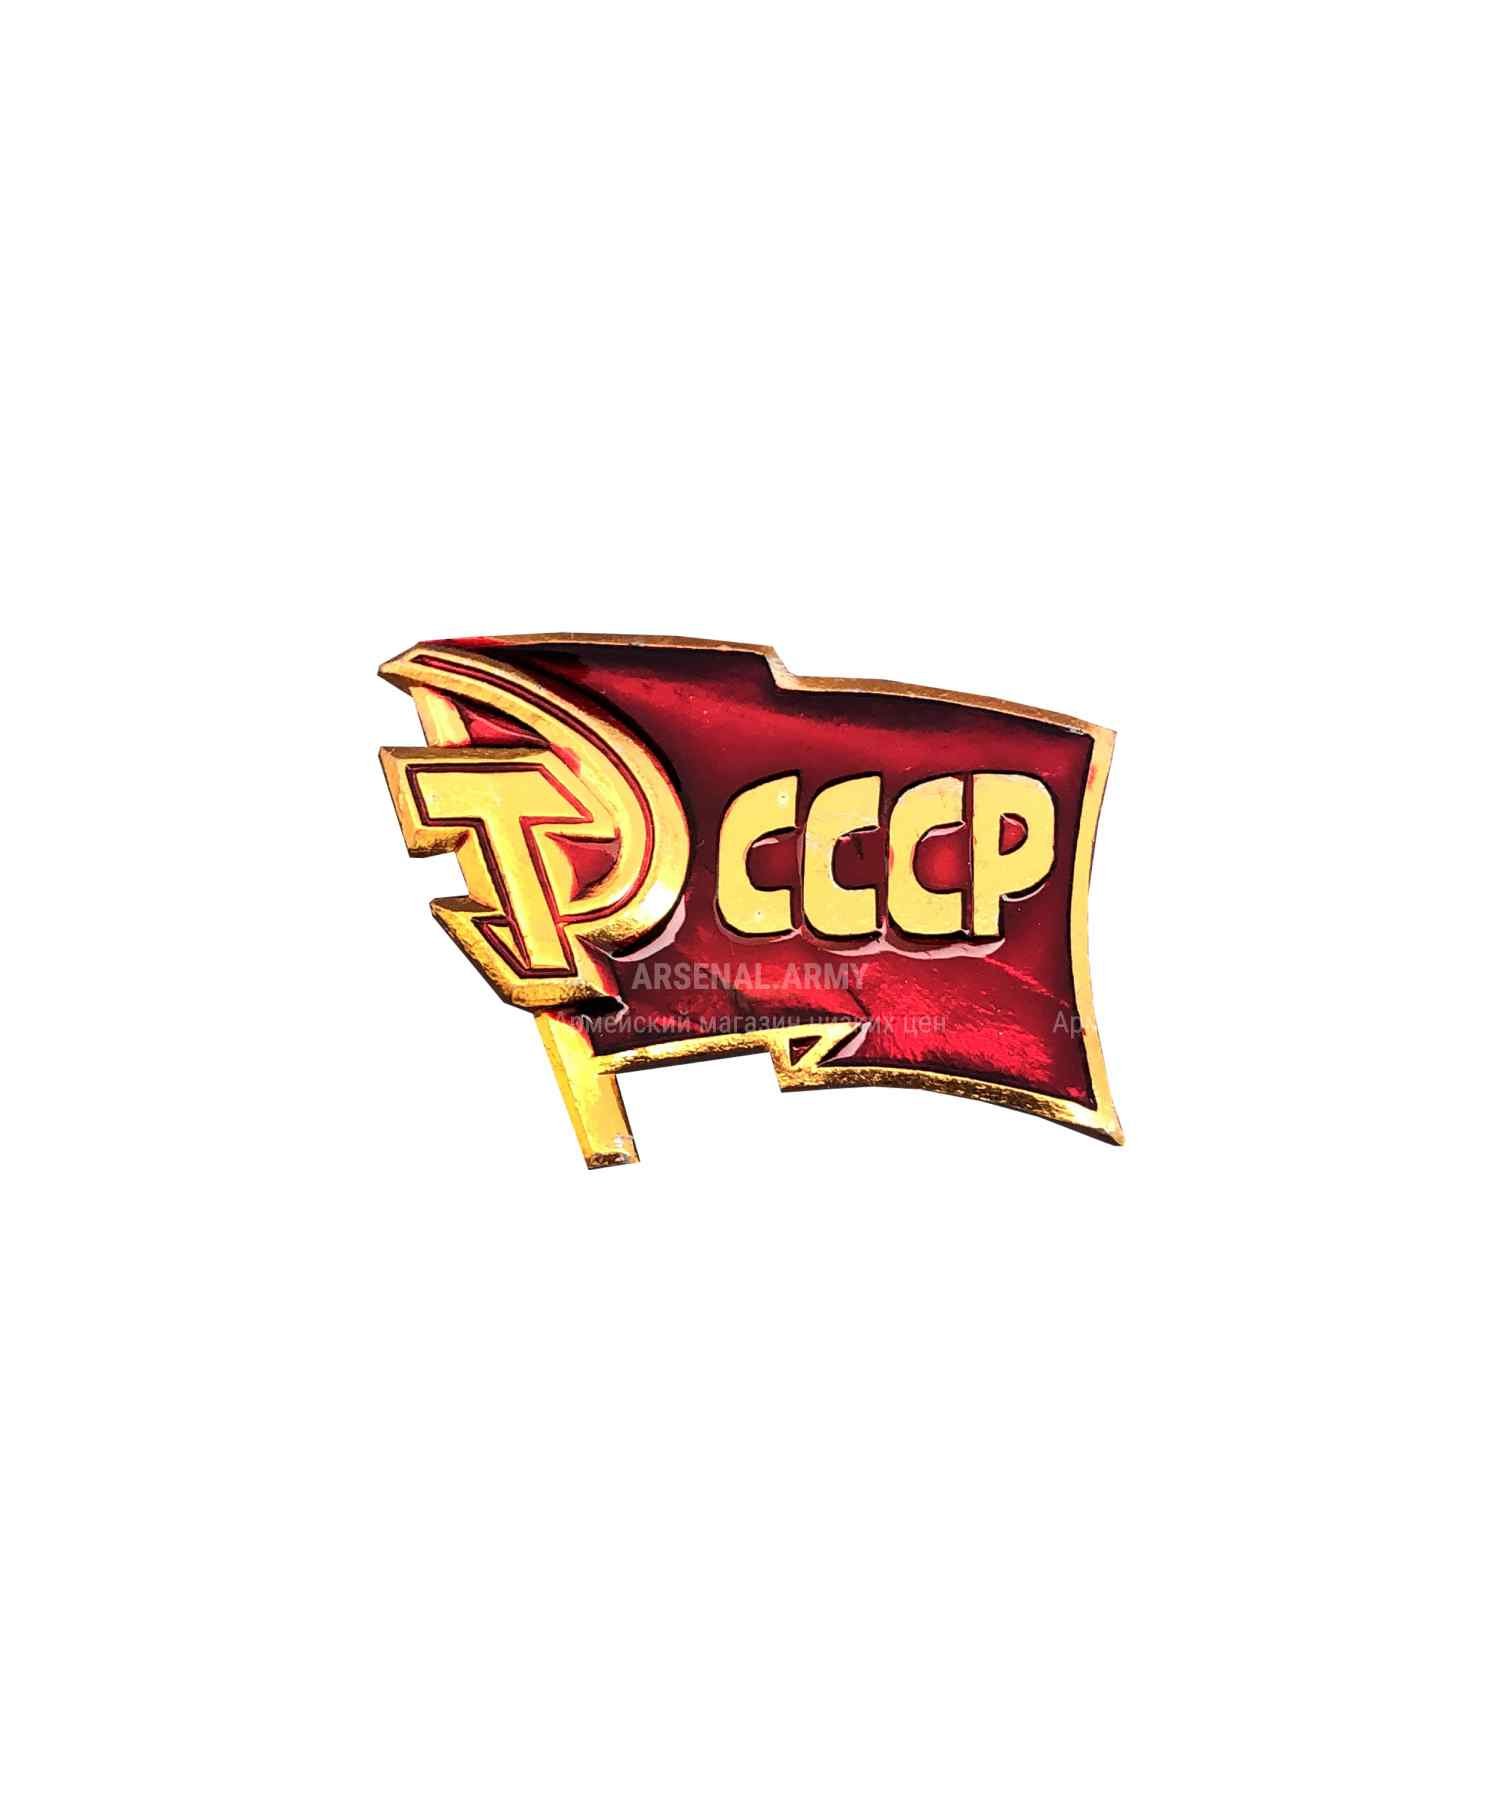 Значок металлический "Флаг СССР"